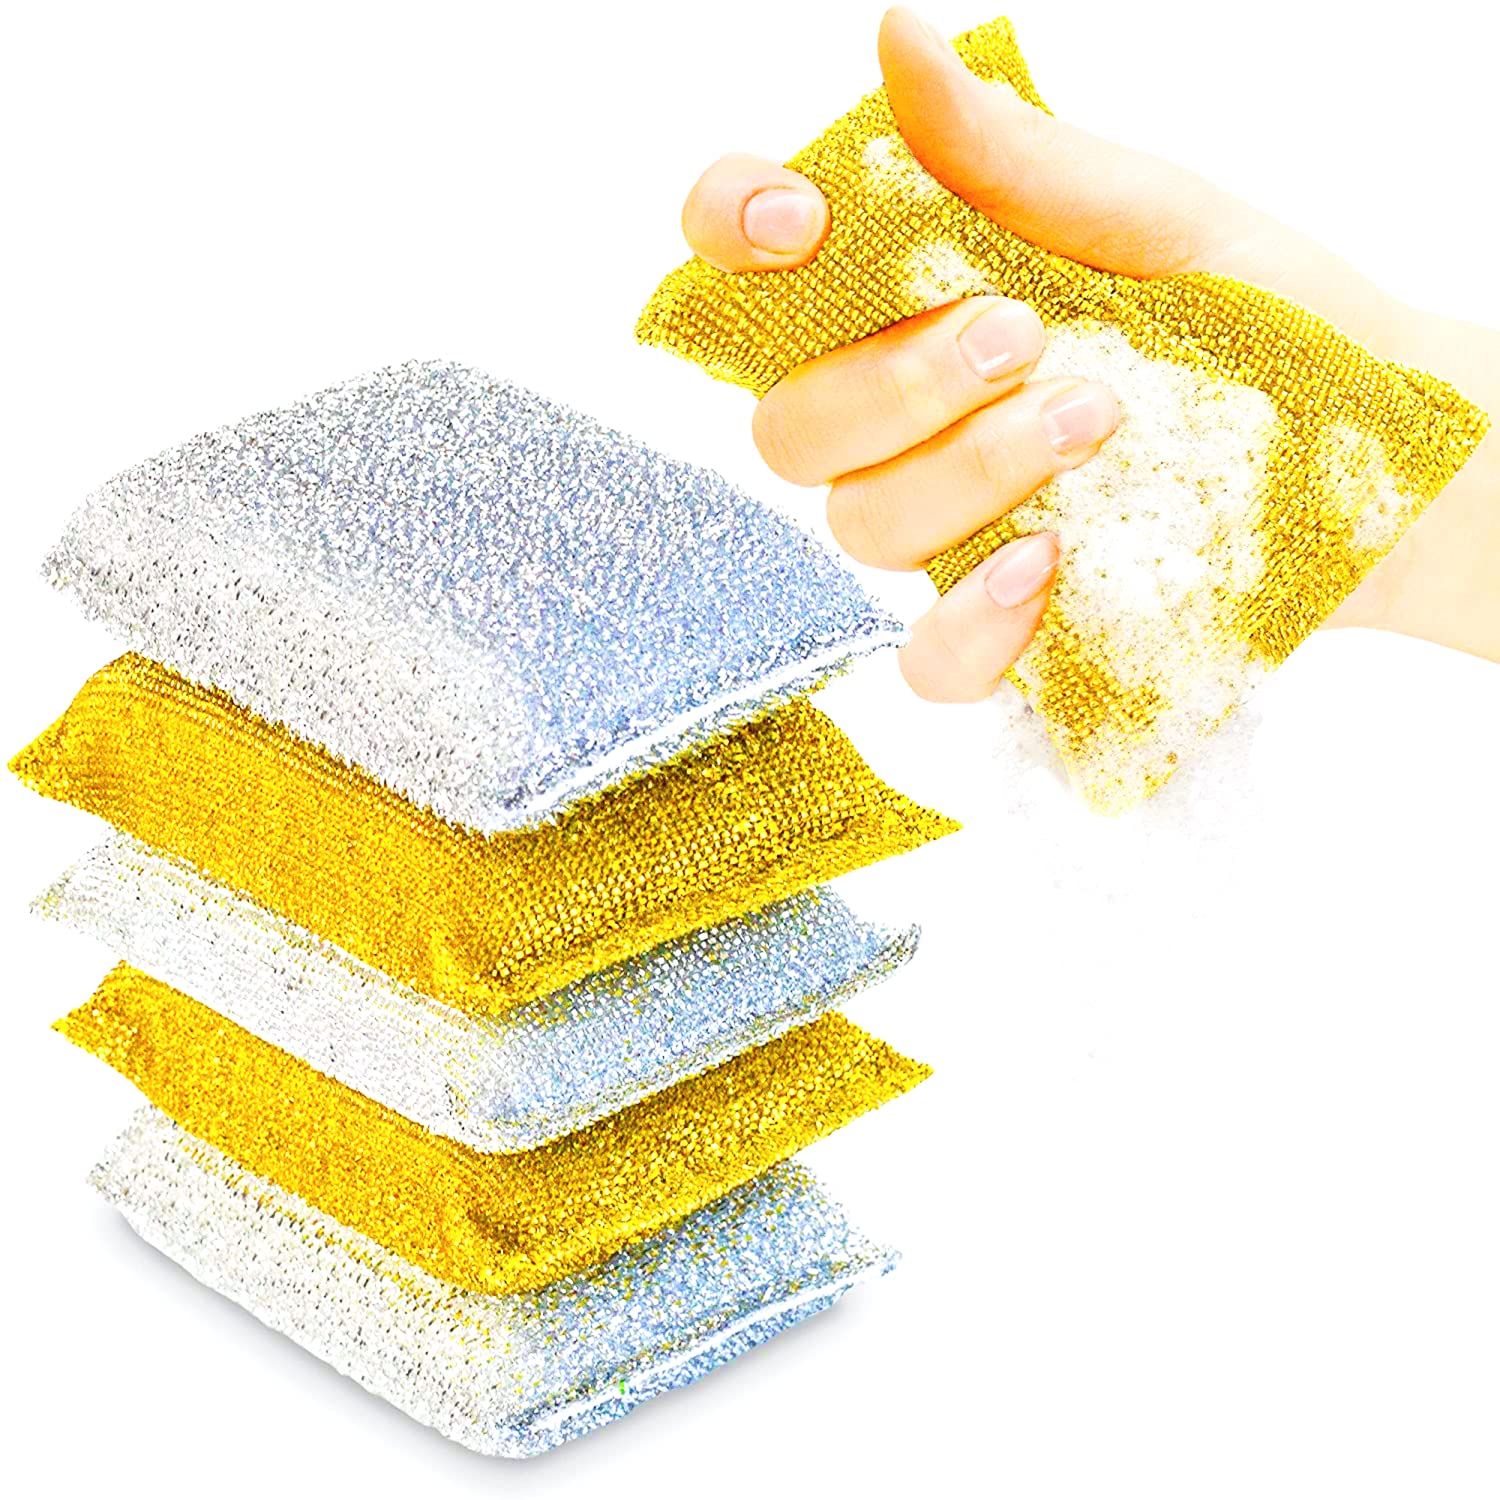 kitchen scrub sponge